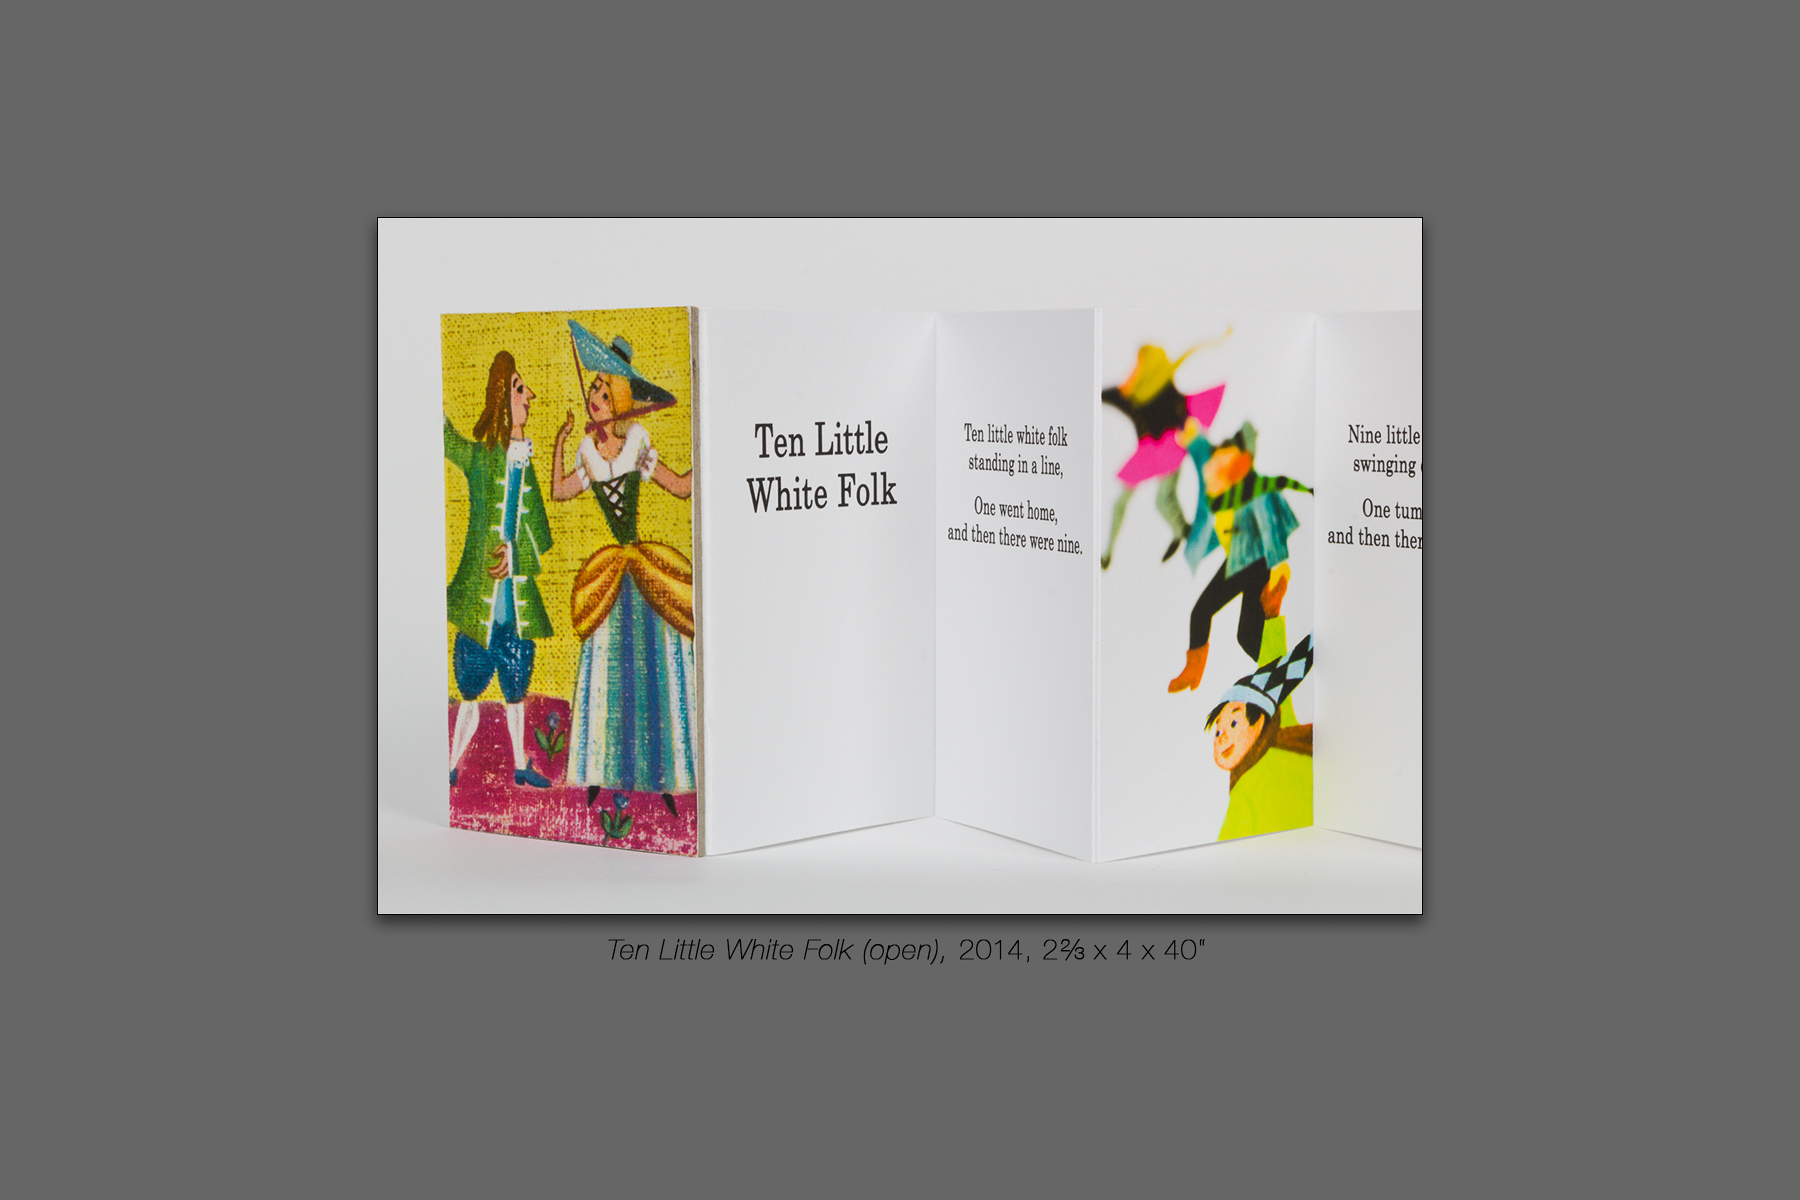 Ten Little White Folk (open), 2014, 2⅔ x 4 x 40“ 